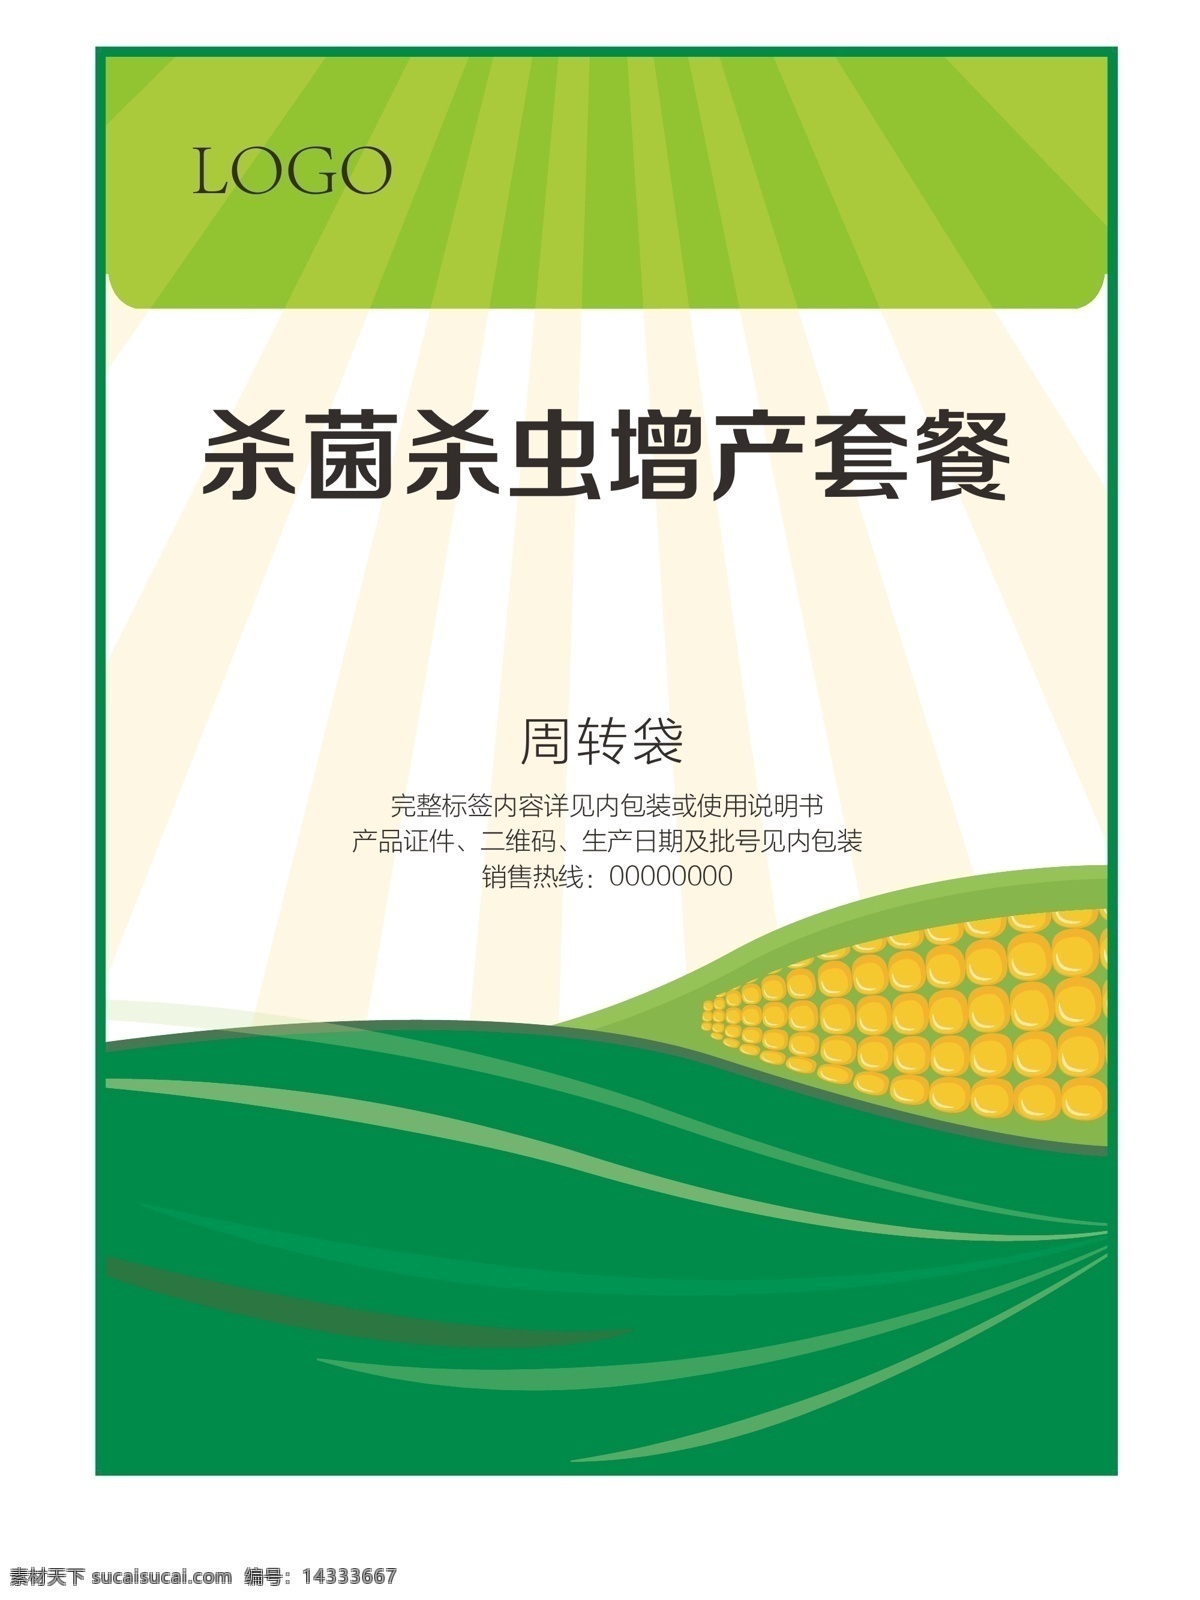 农药袋子 农药产品 农药标签 玉米 光芒 杀菌 杀虫 包装设计